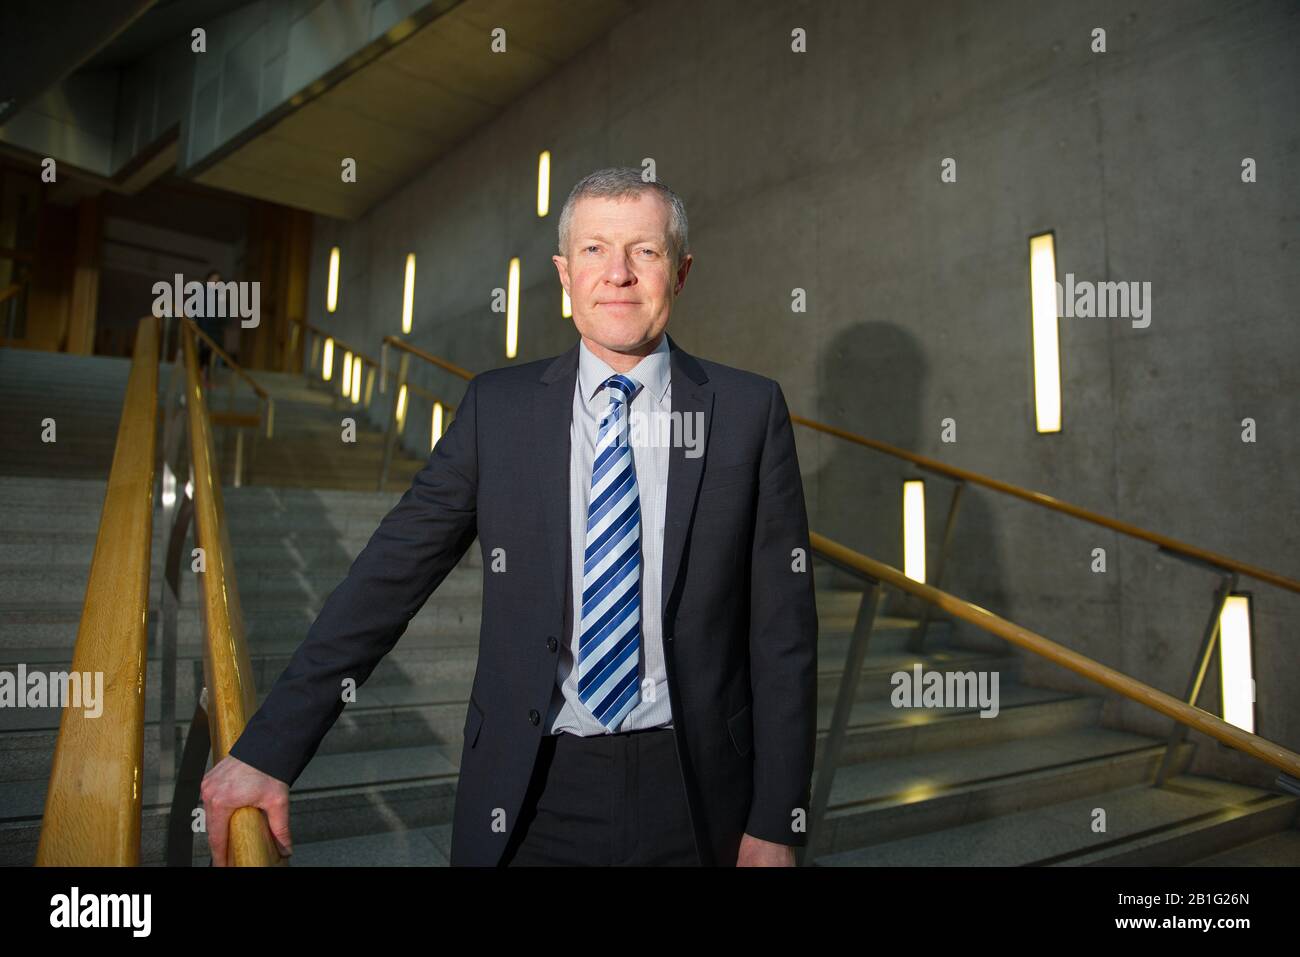 Edinburgh, Großbritannien. Februar 2020. Abgebildet: Willie Rennie MSP - Anführer der Scottish Liberal Democrats Party. Auf den Stufen der Gartenlobby des schottischen Parlaments zu sehen. Kredit: Colin Fisher/Alamy Live News Stockfoto